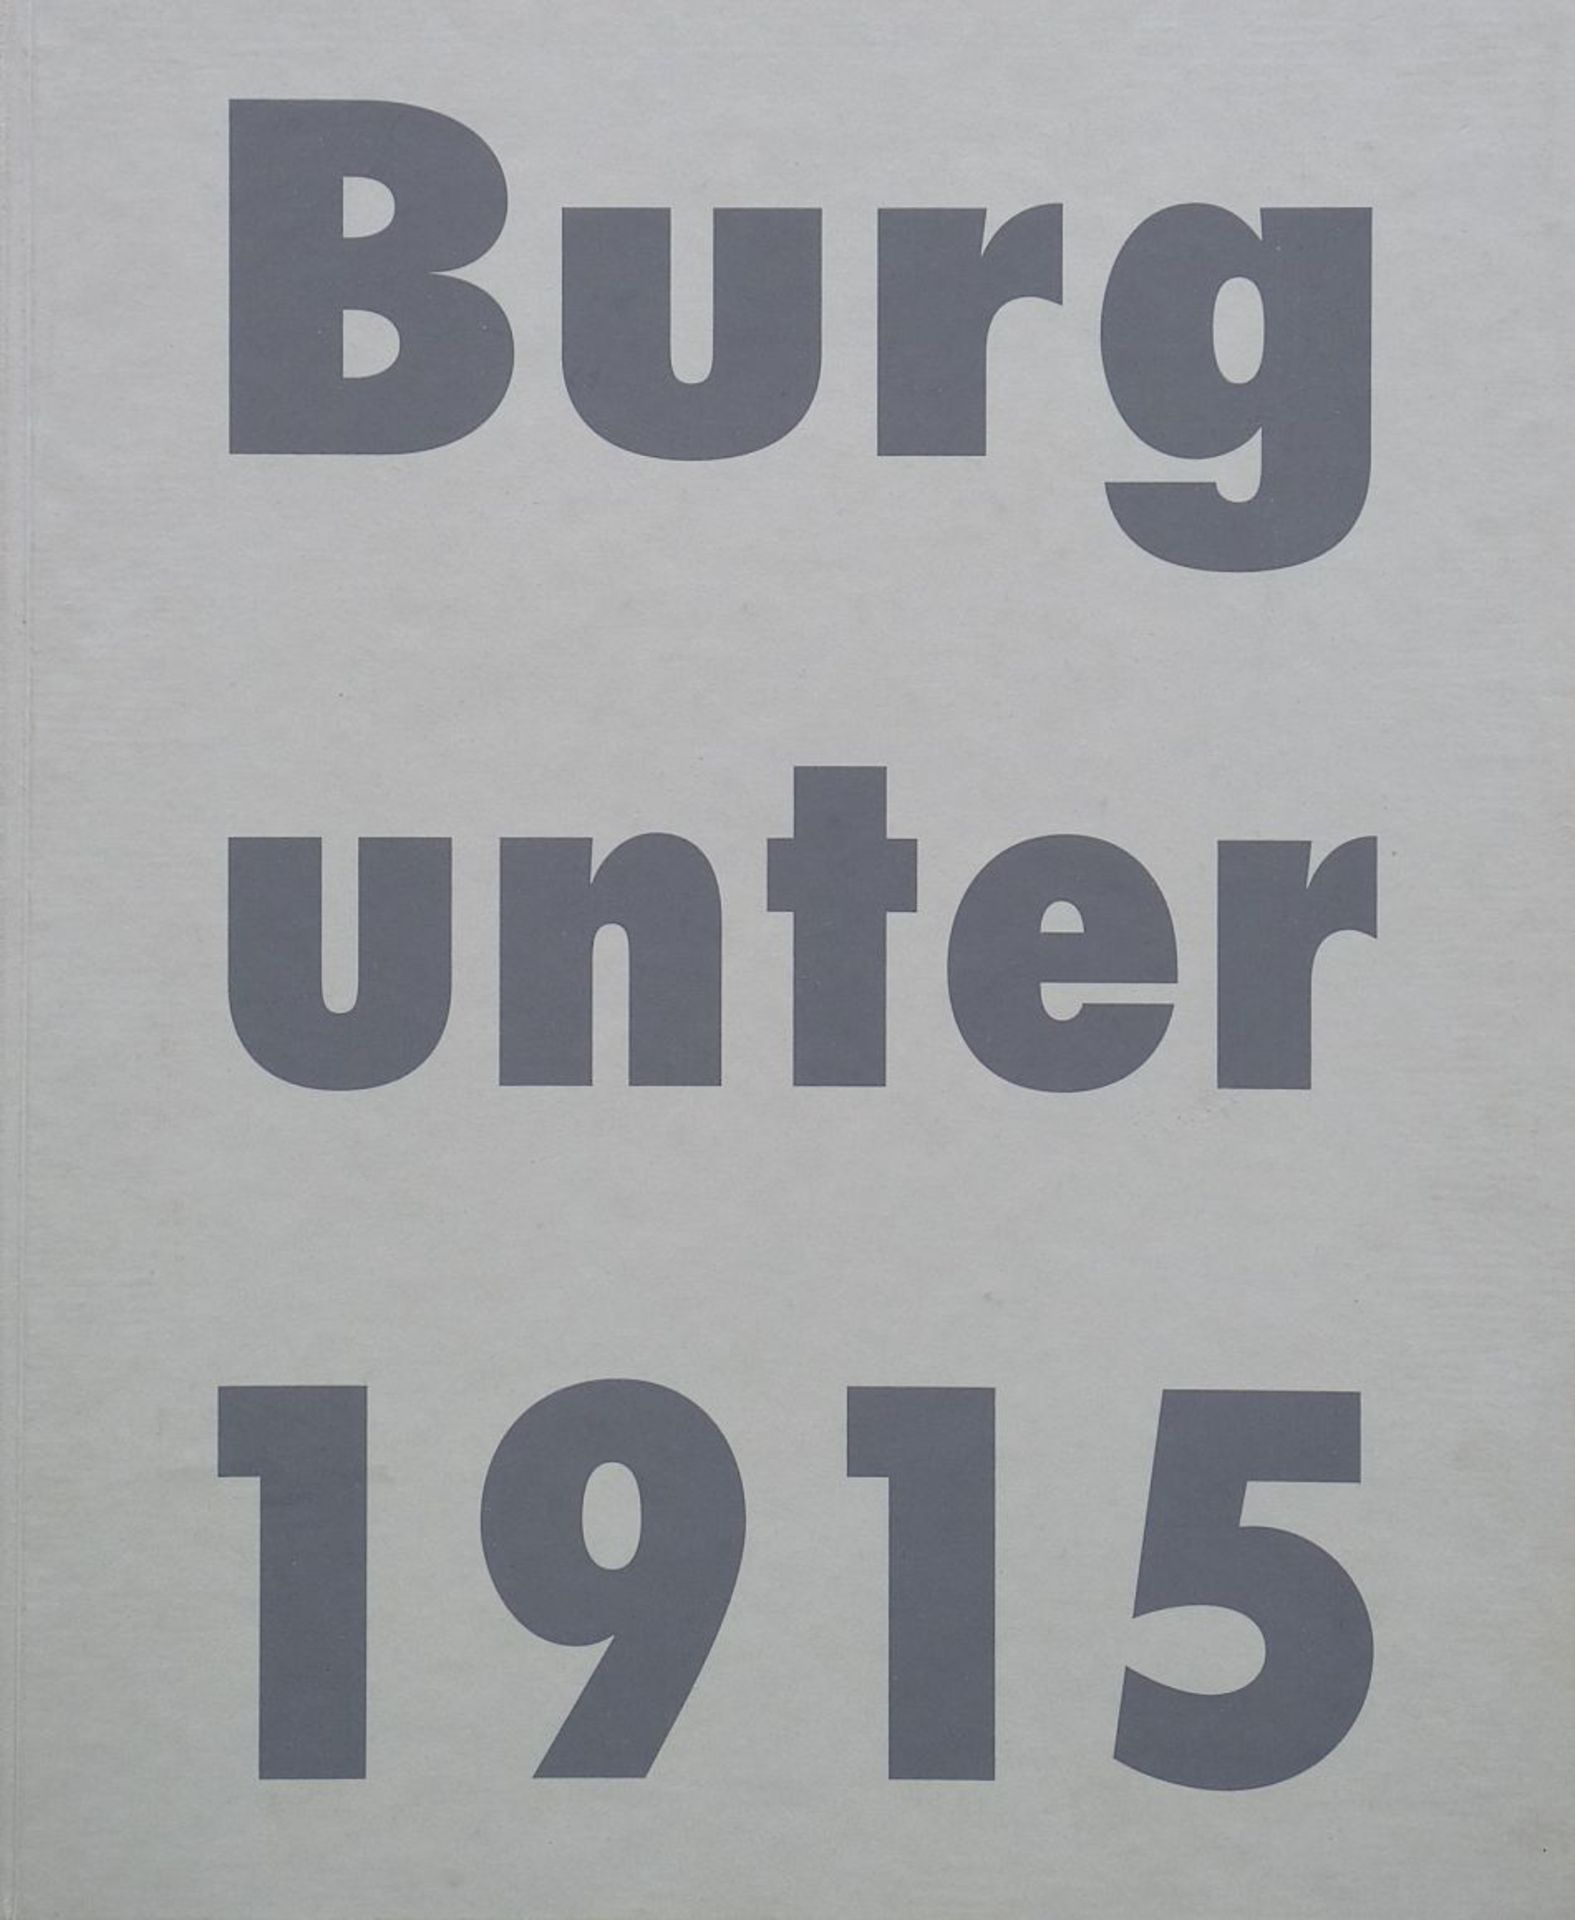 VERSCHIEDENE, : "Burg unter 1915", 1993